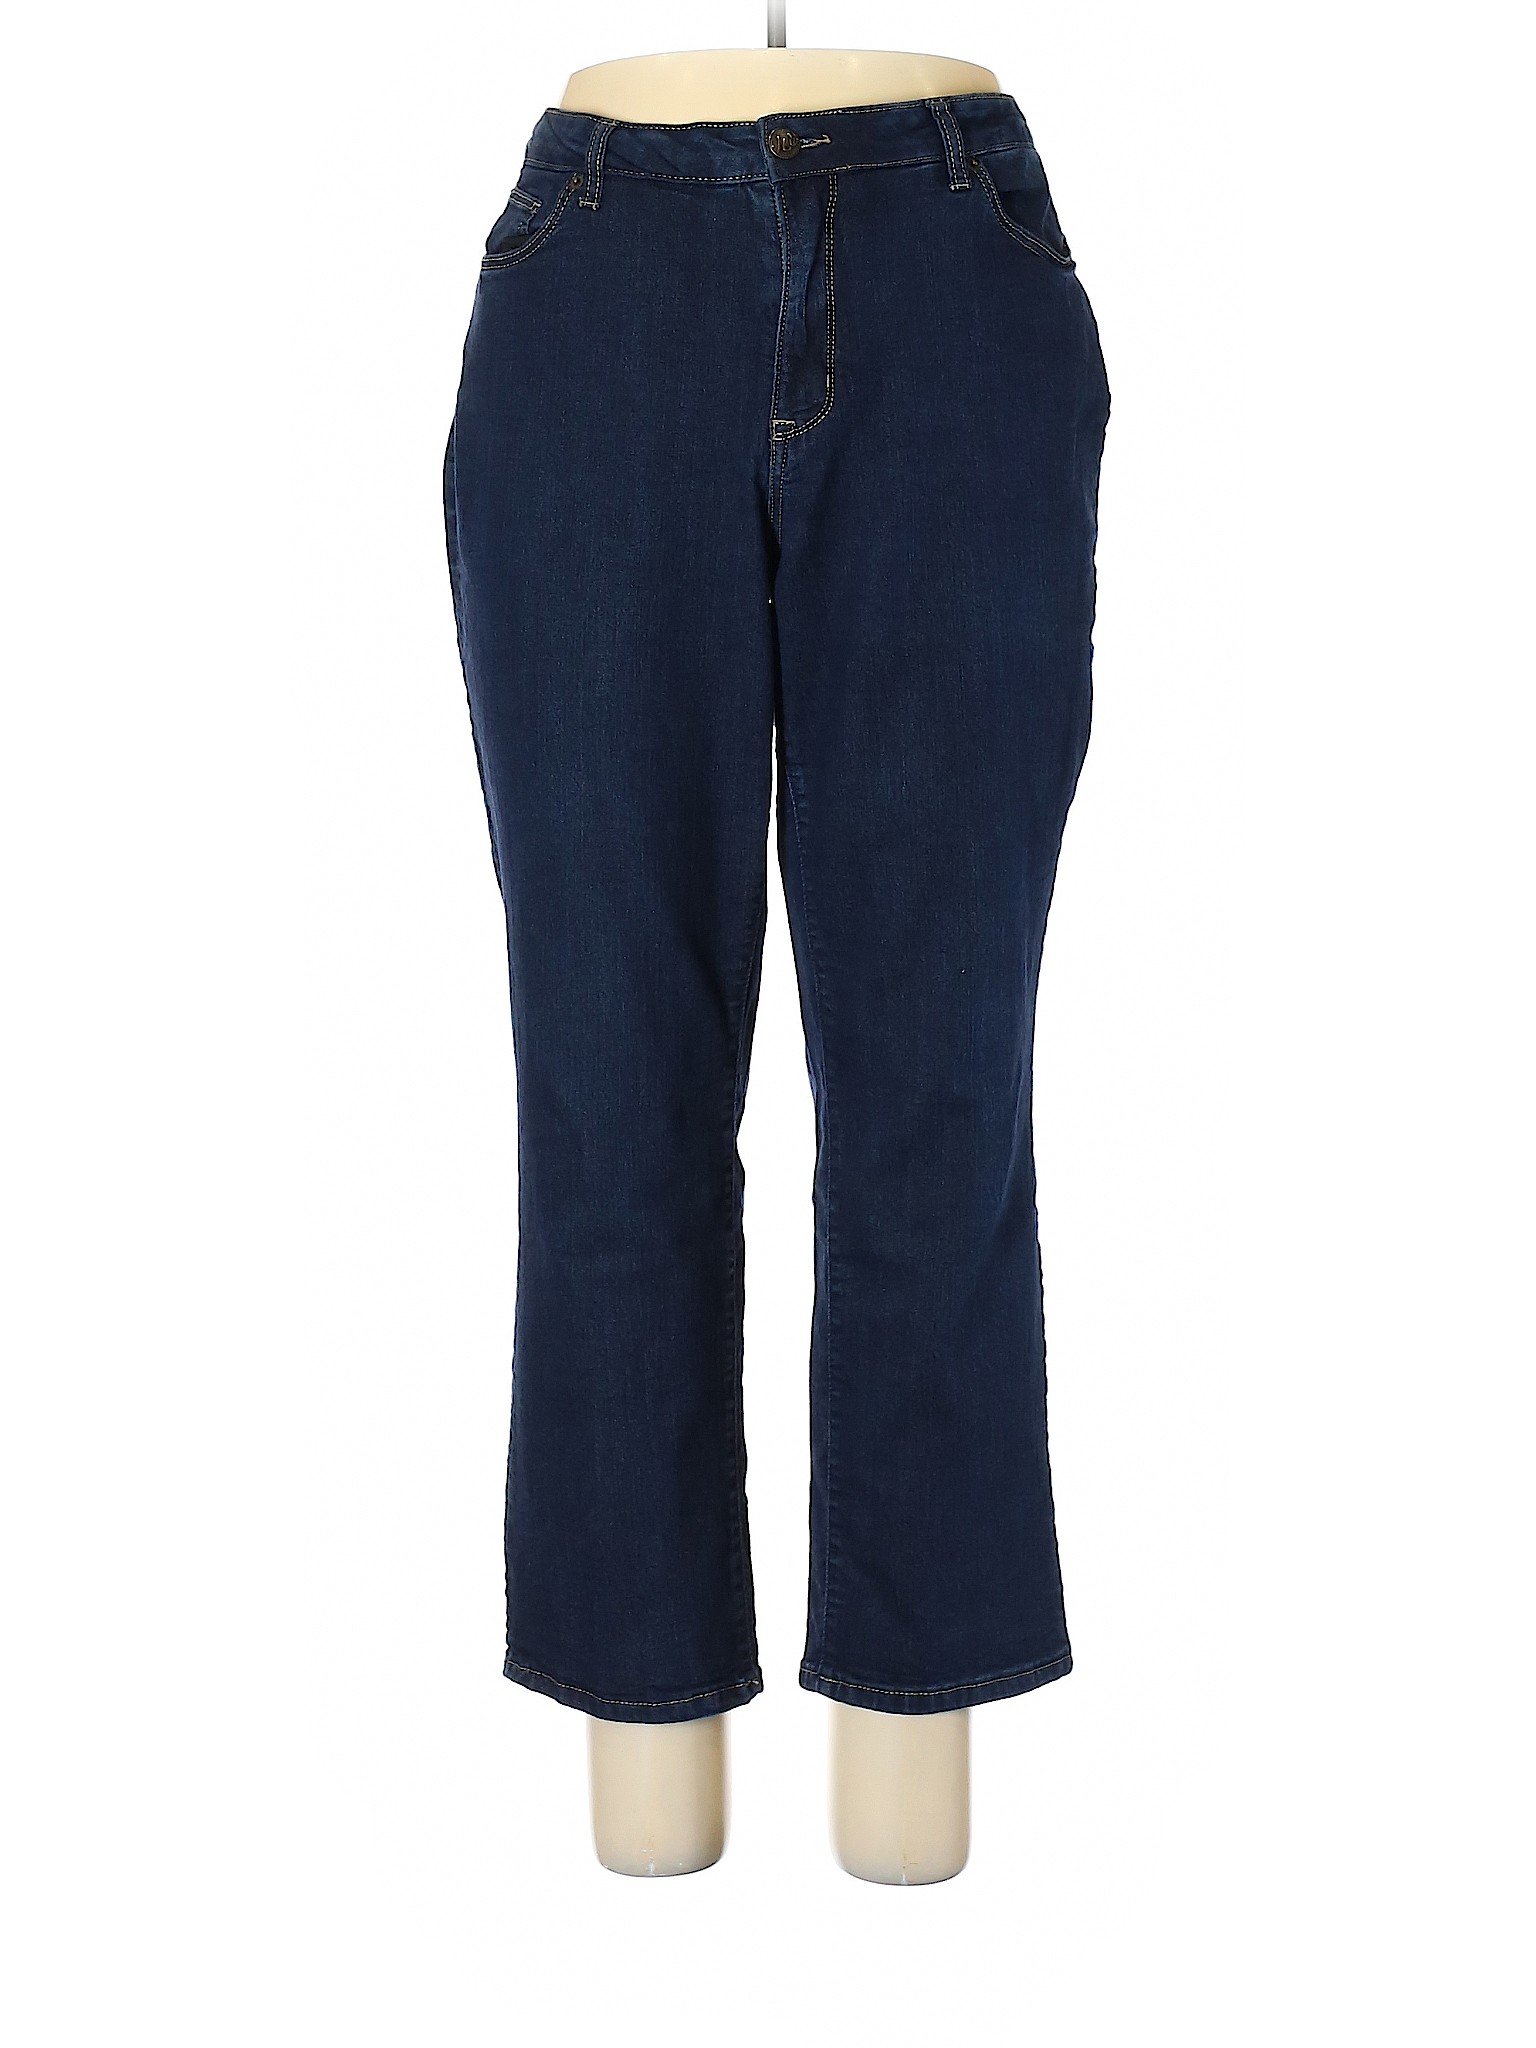 Westport 1962 Solid Blue Jeans Size 16 - 63% off | thredUP